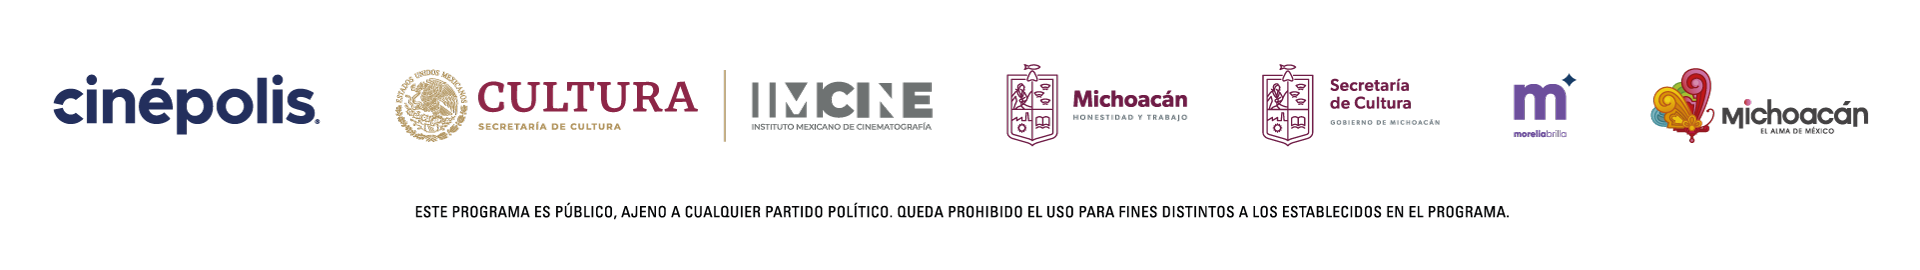 Pleca logos Michoacán